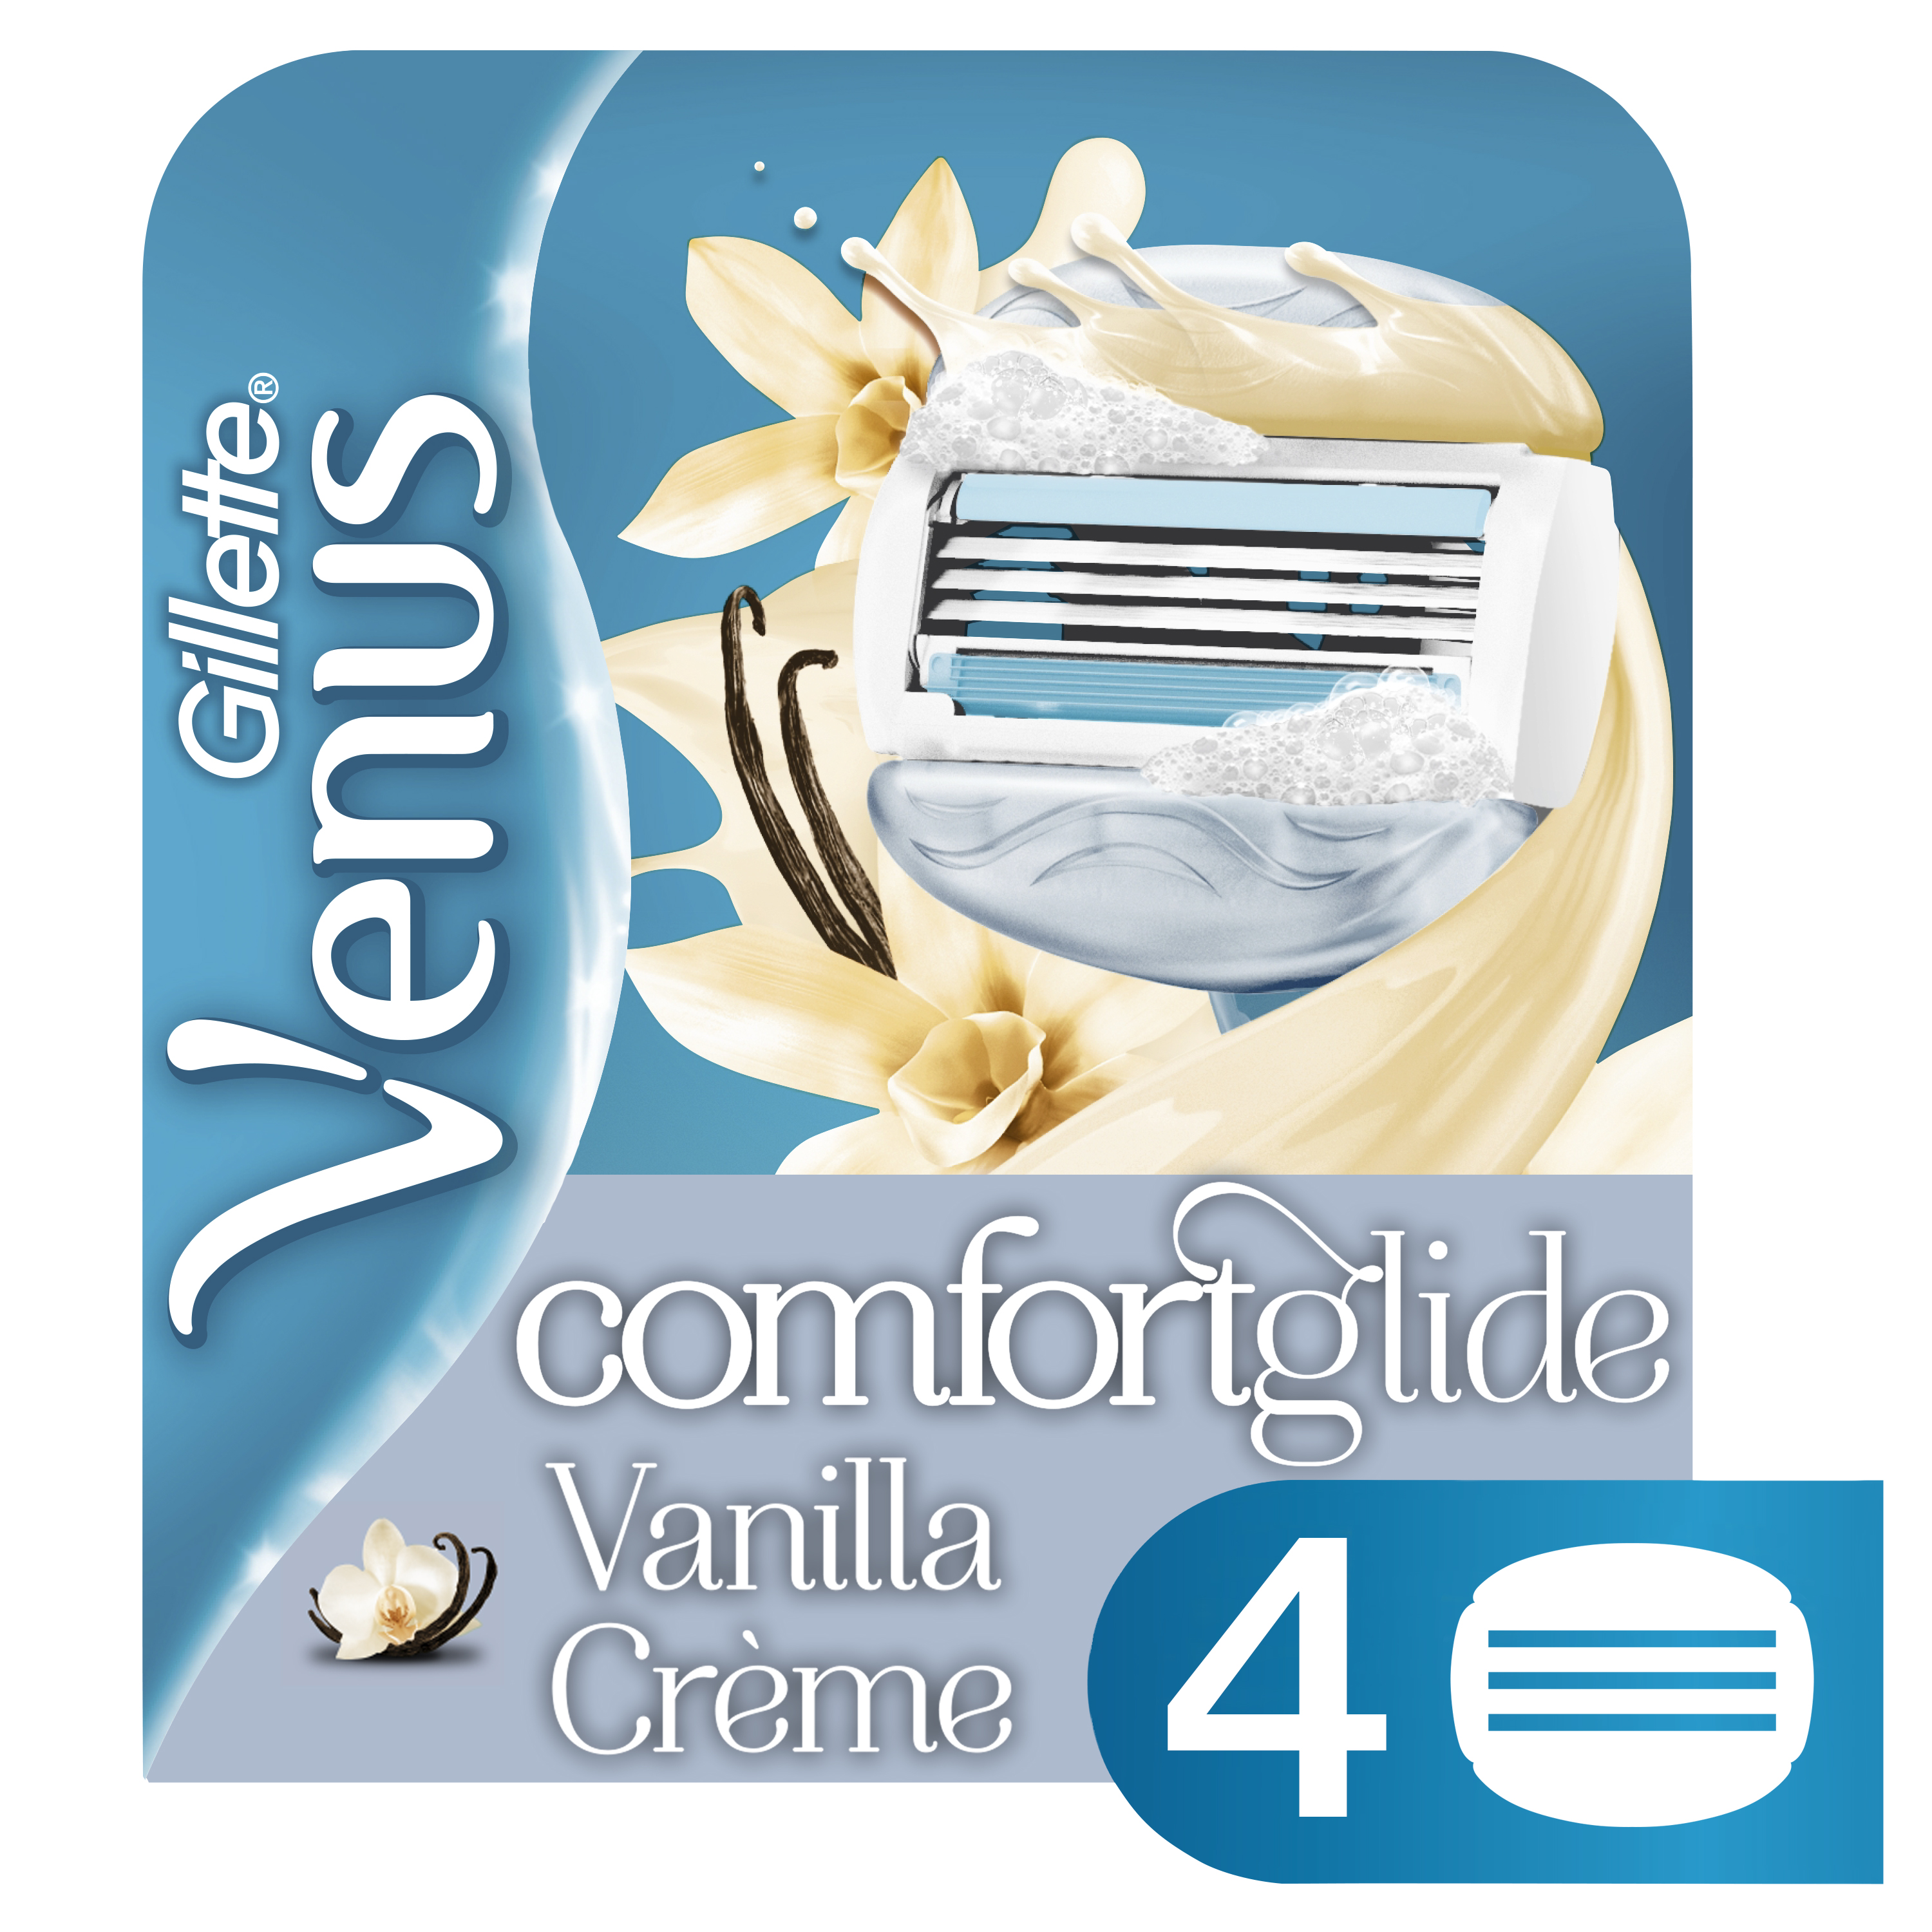 Gillette Venus ComfortGlide Womens Razor Blade Refill Vanilla Creme 4 ct - image 2 of 7